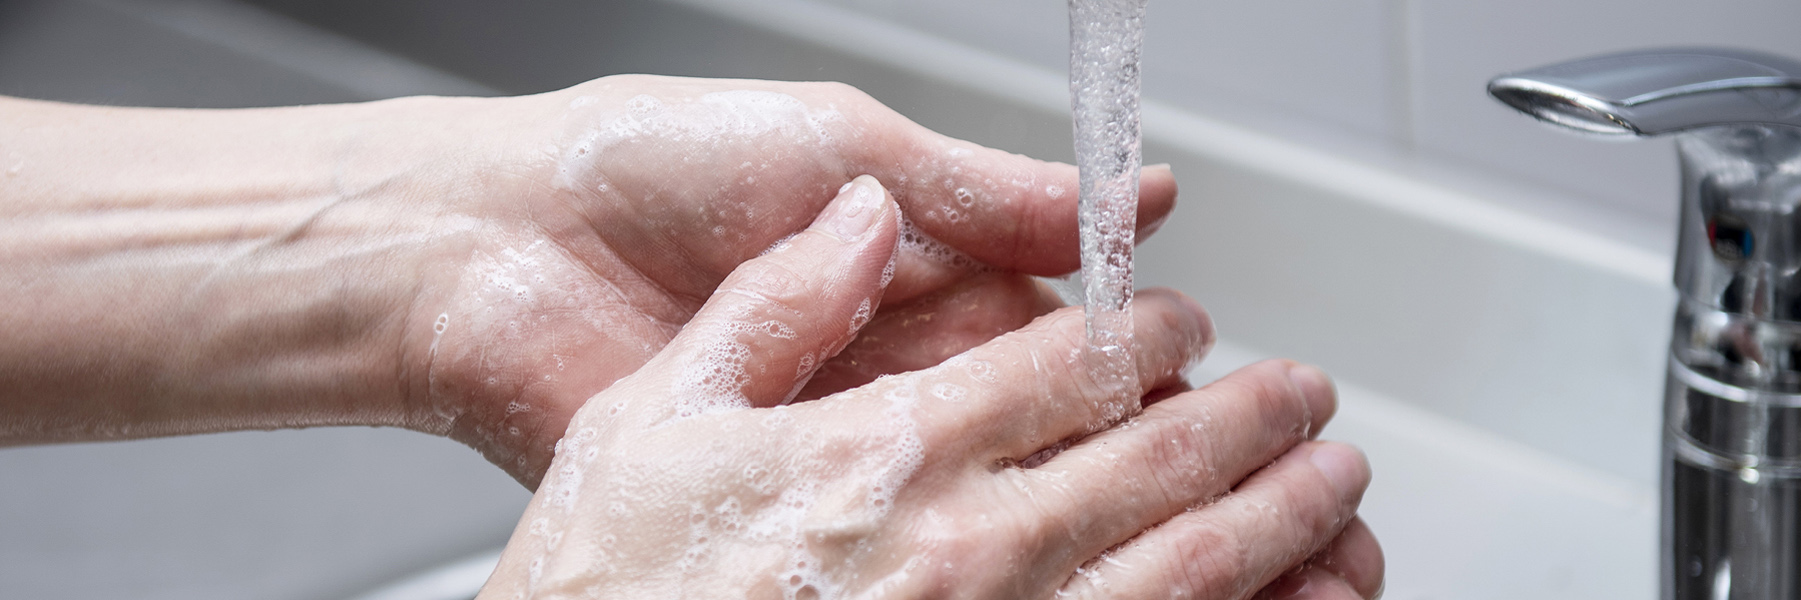 Käsien pesu. Hygienia on tärkeää varsinkin korona-aikana.